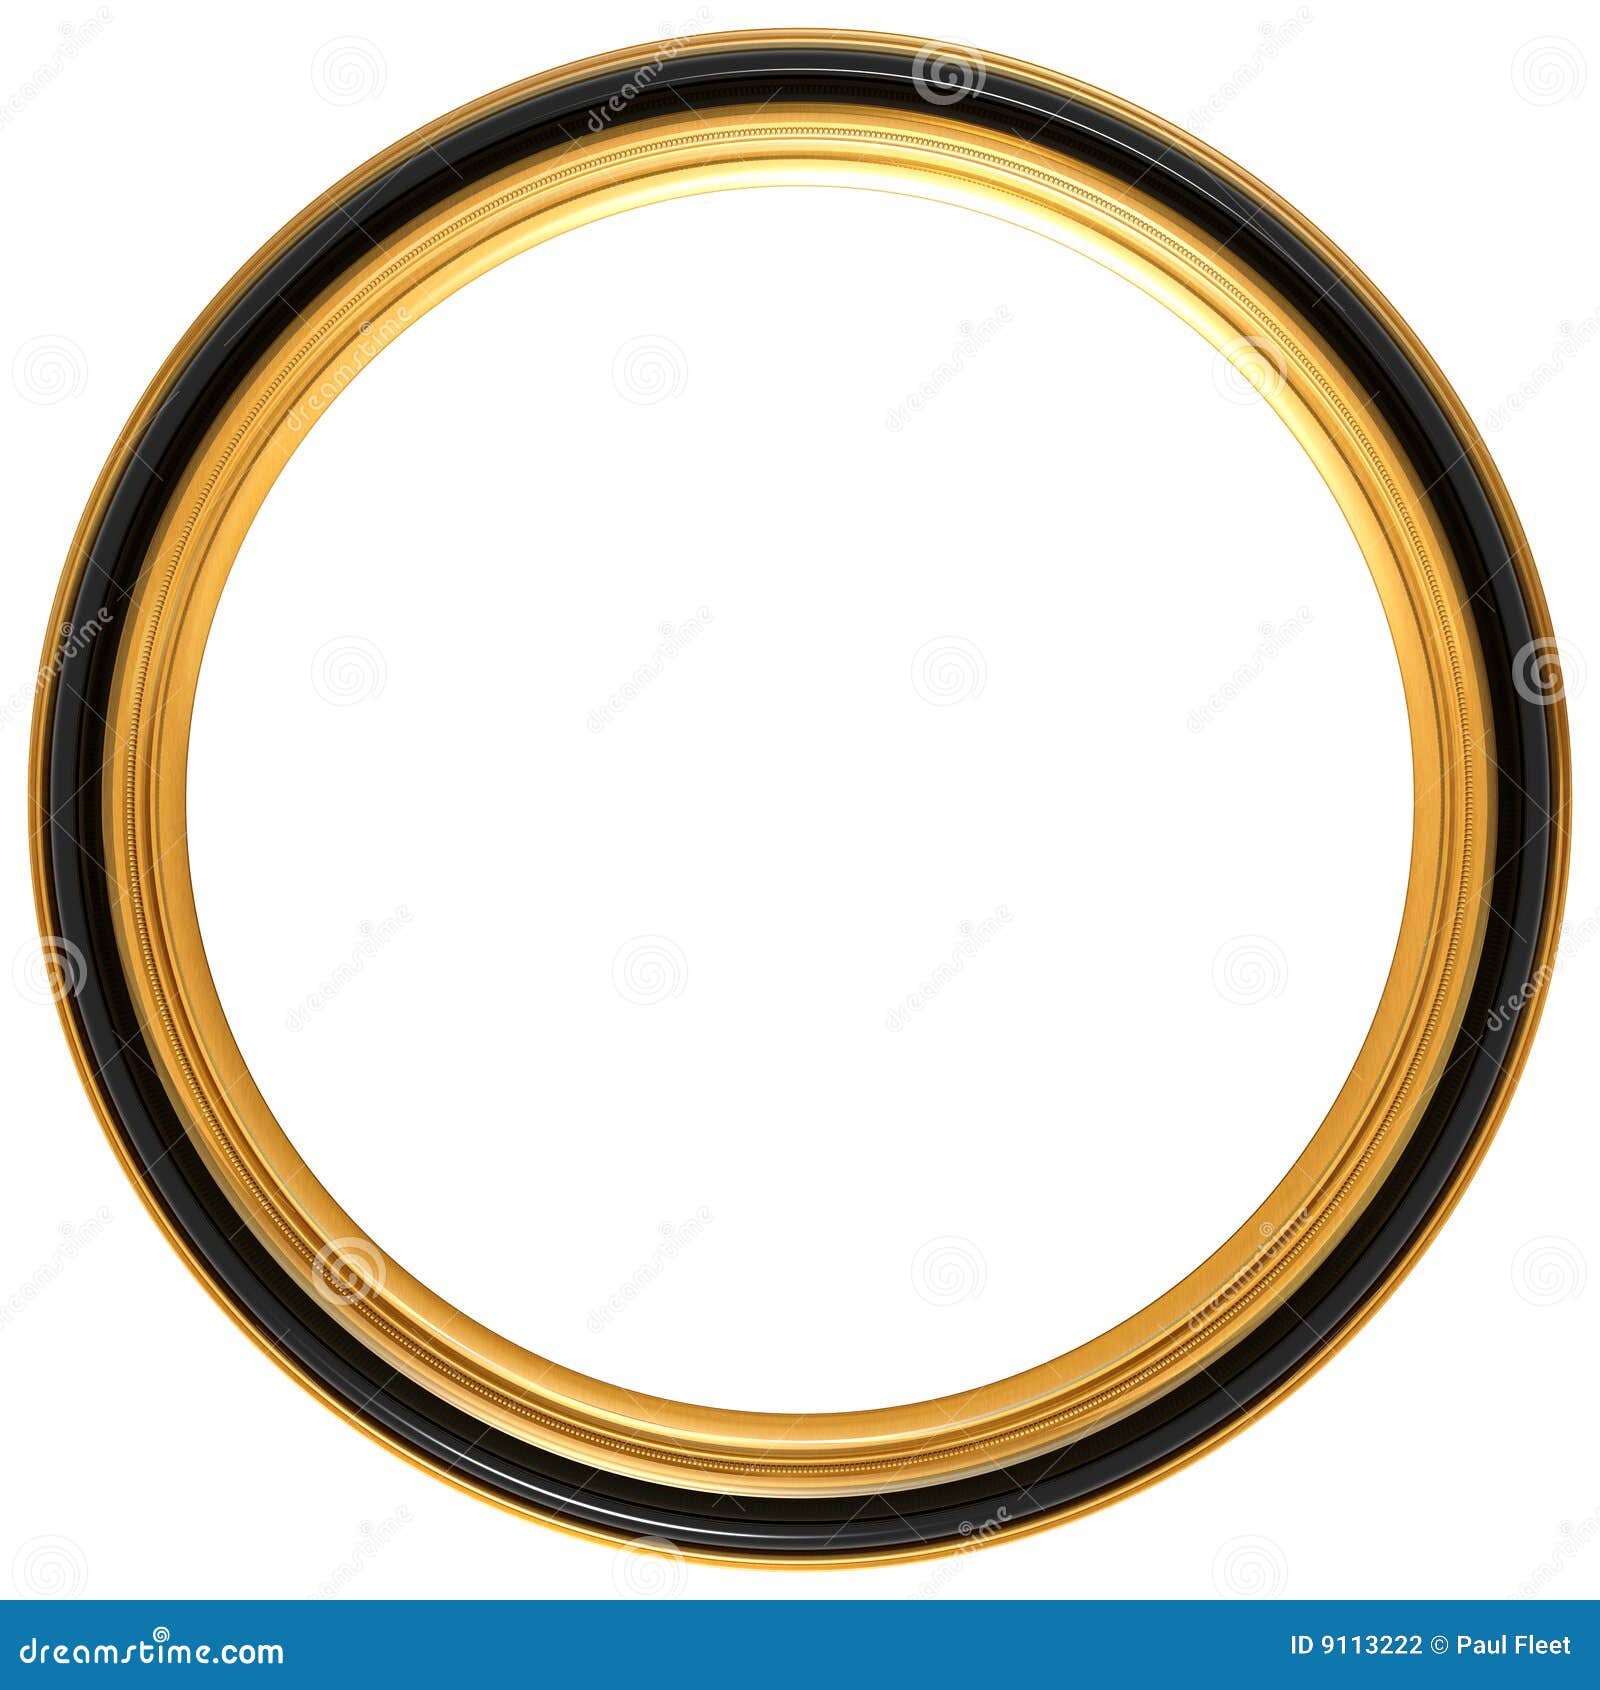 circular antique picture frame